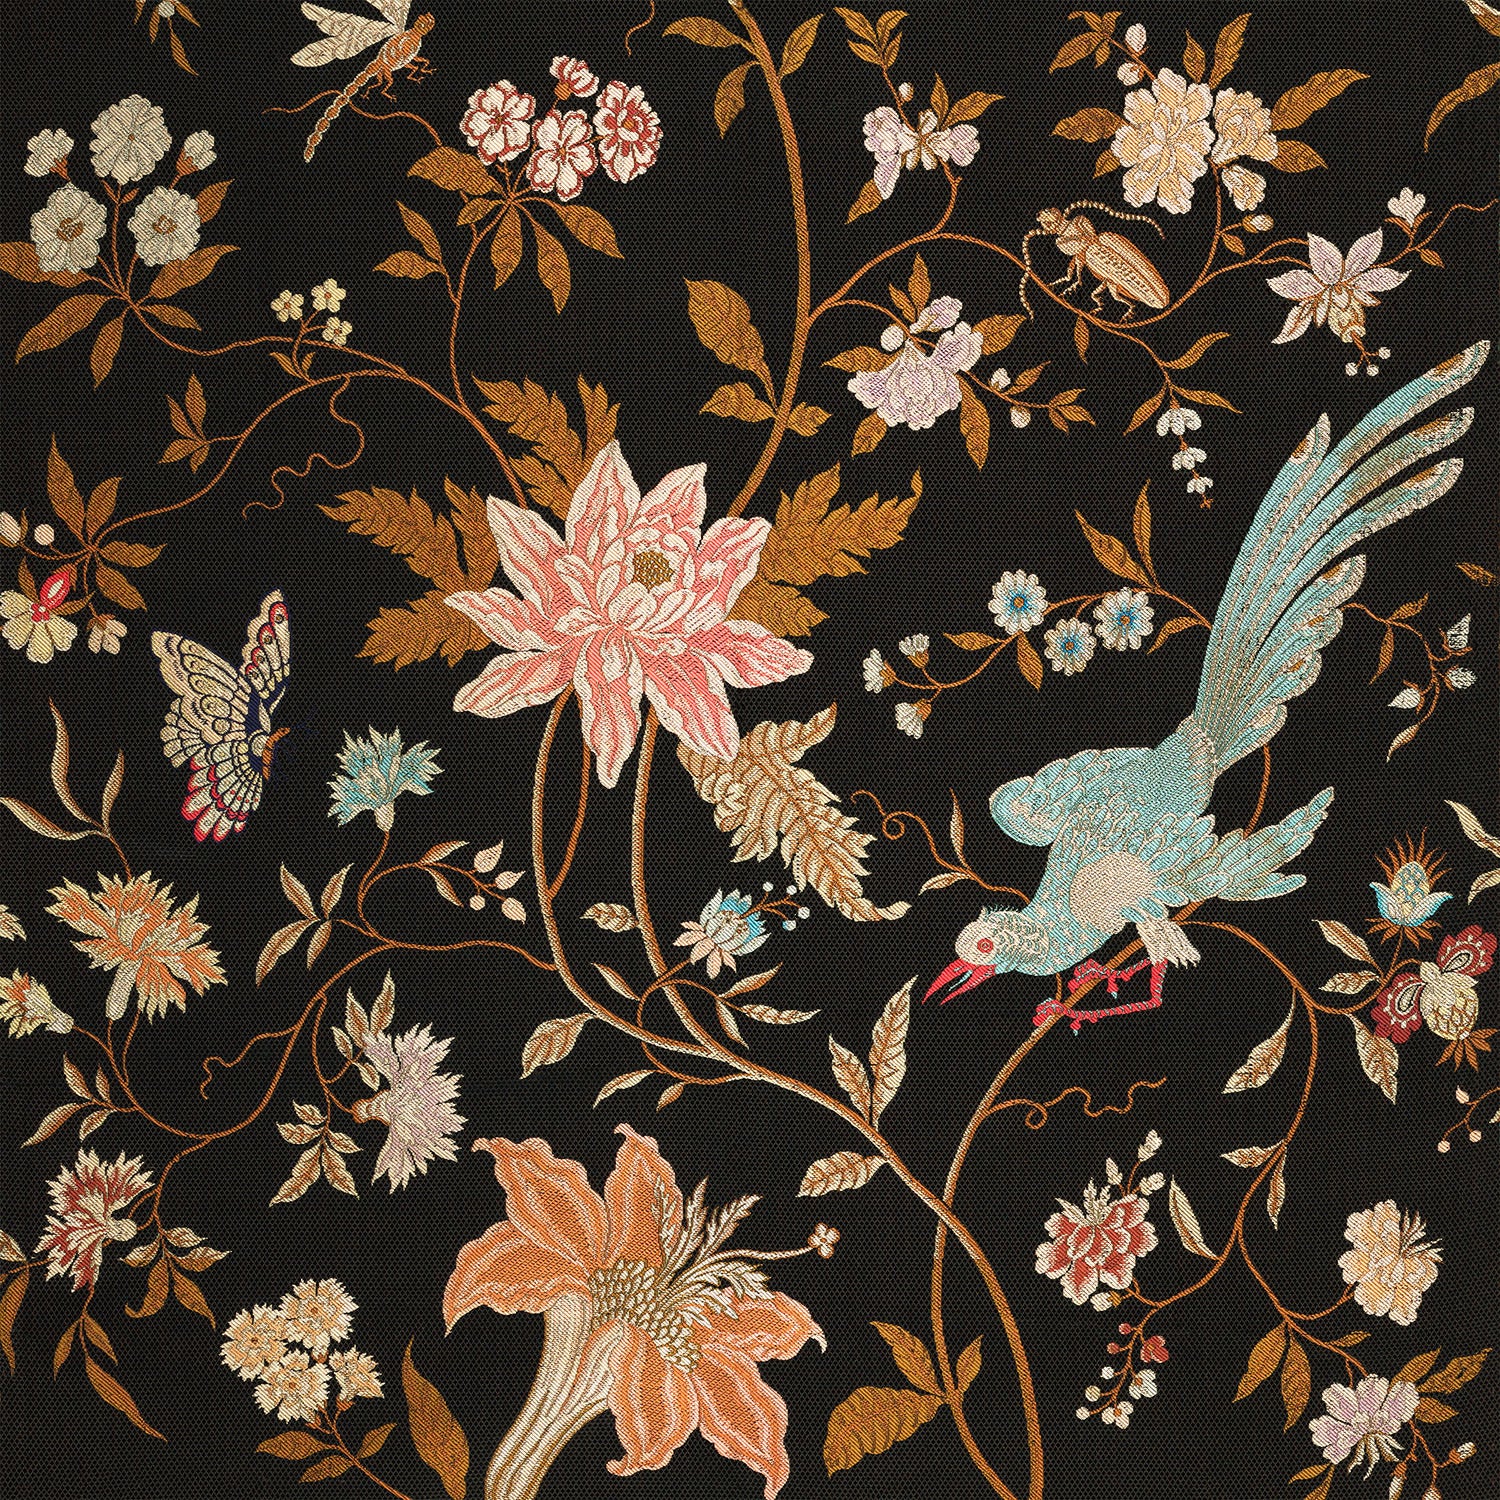 19th century textile